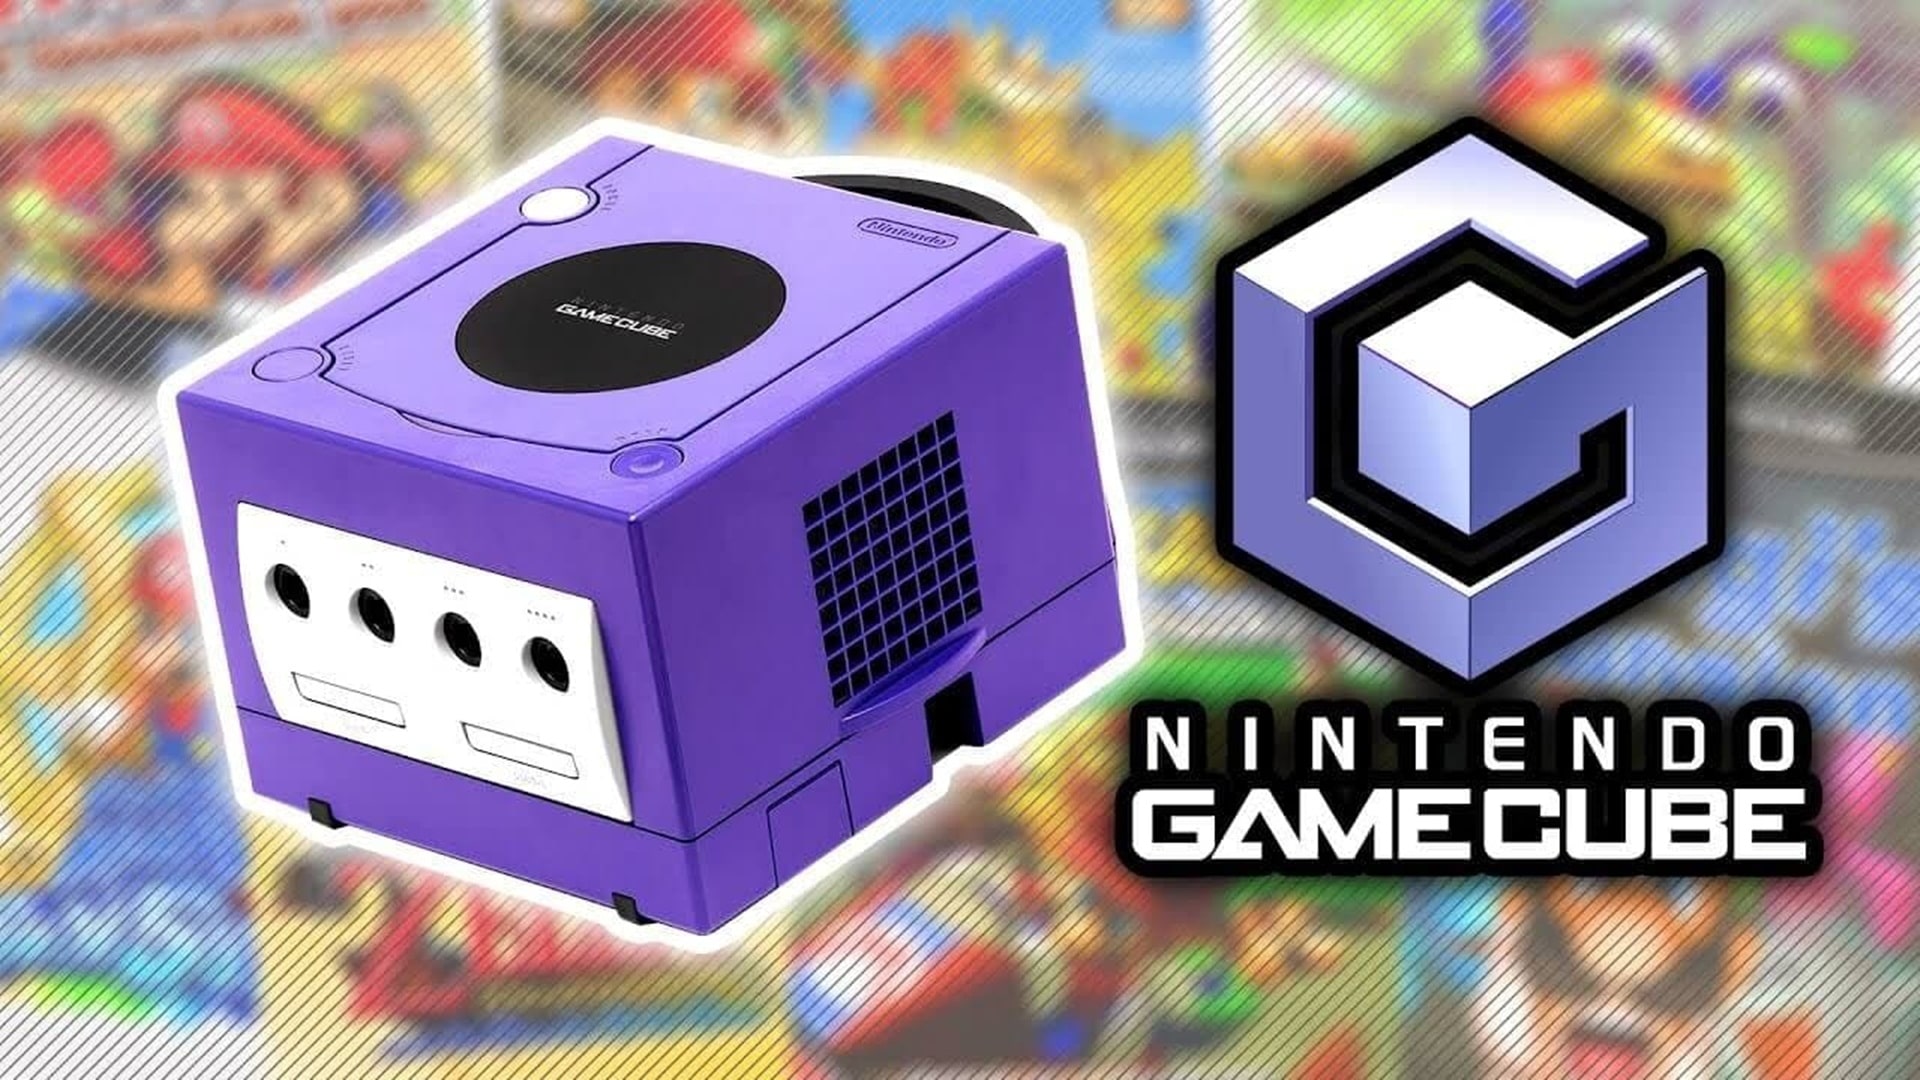 ¿Conocías estos datos de la Nintendo GameCube? GamersRD